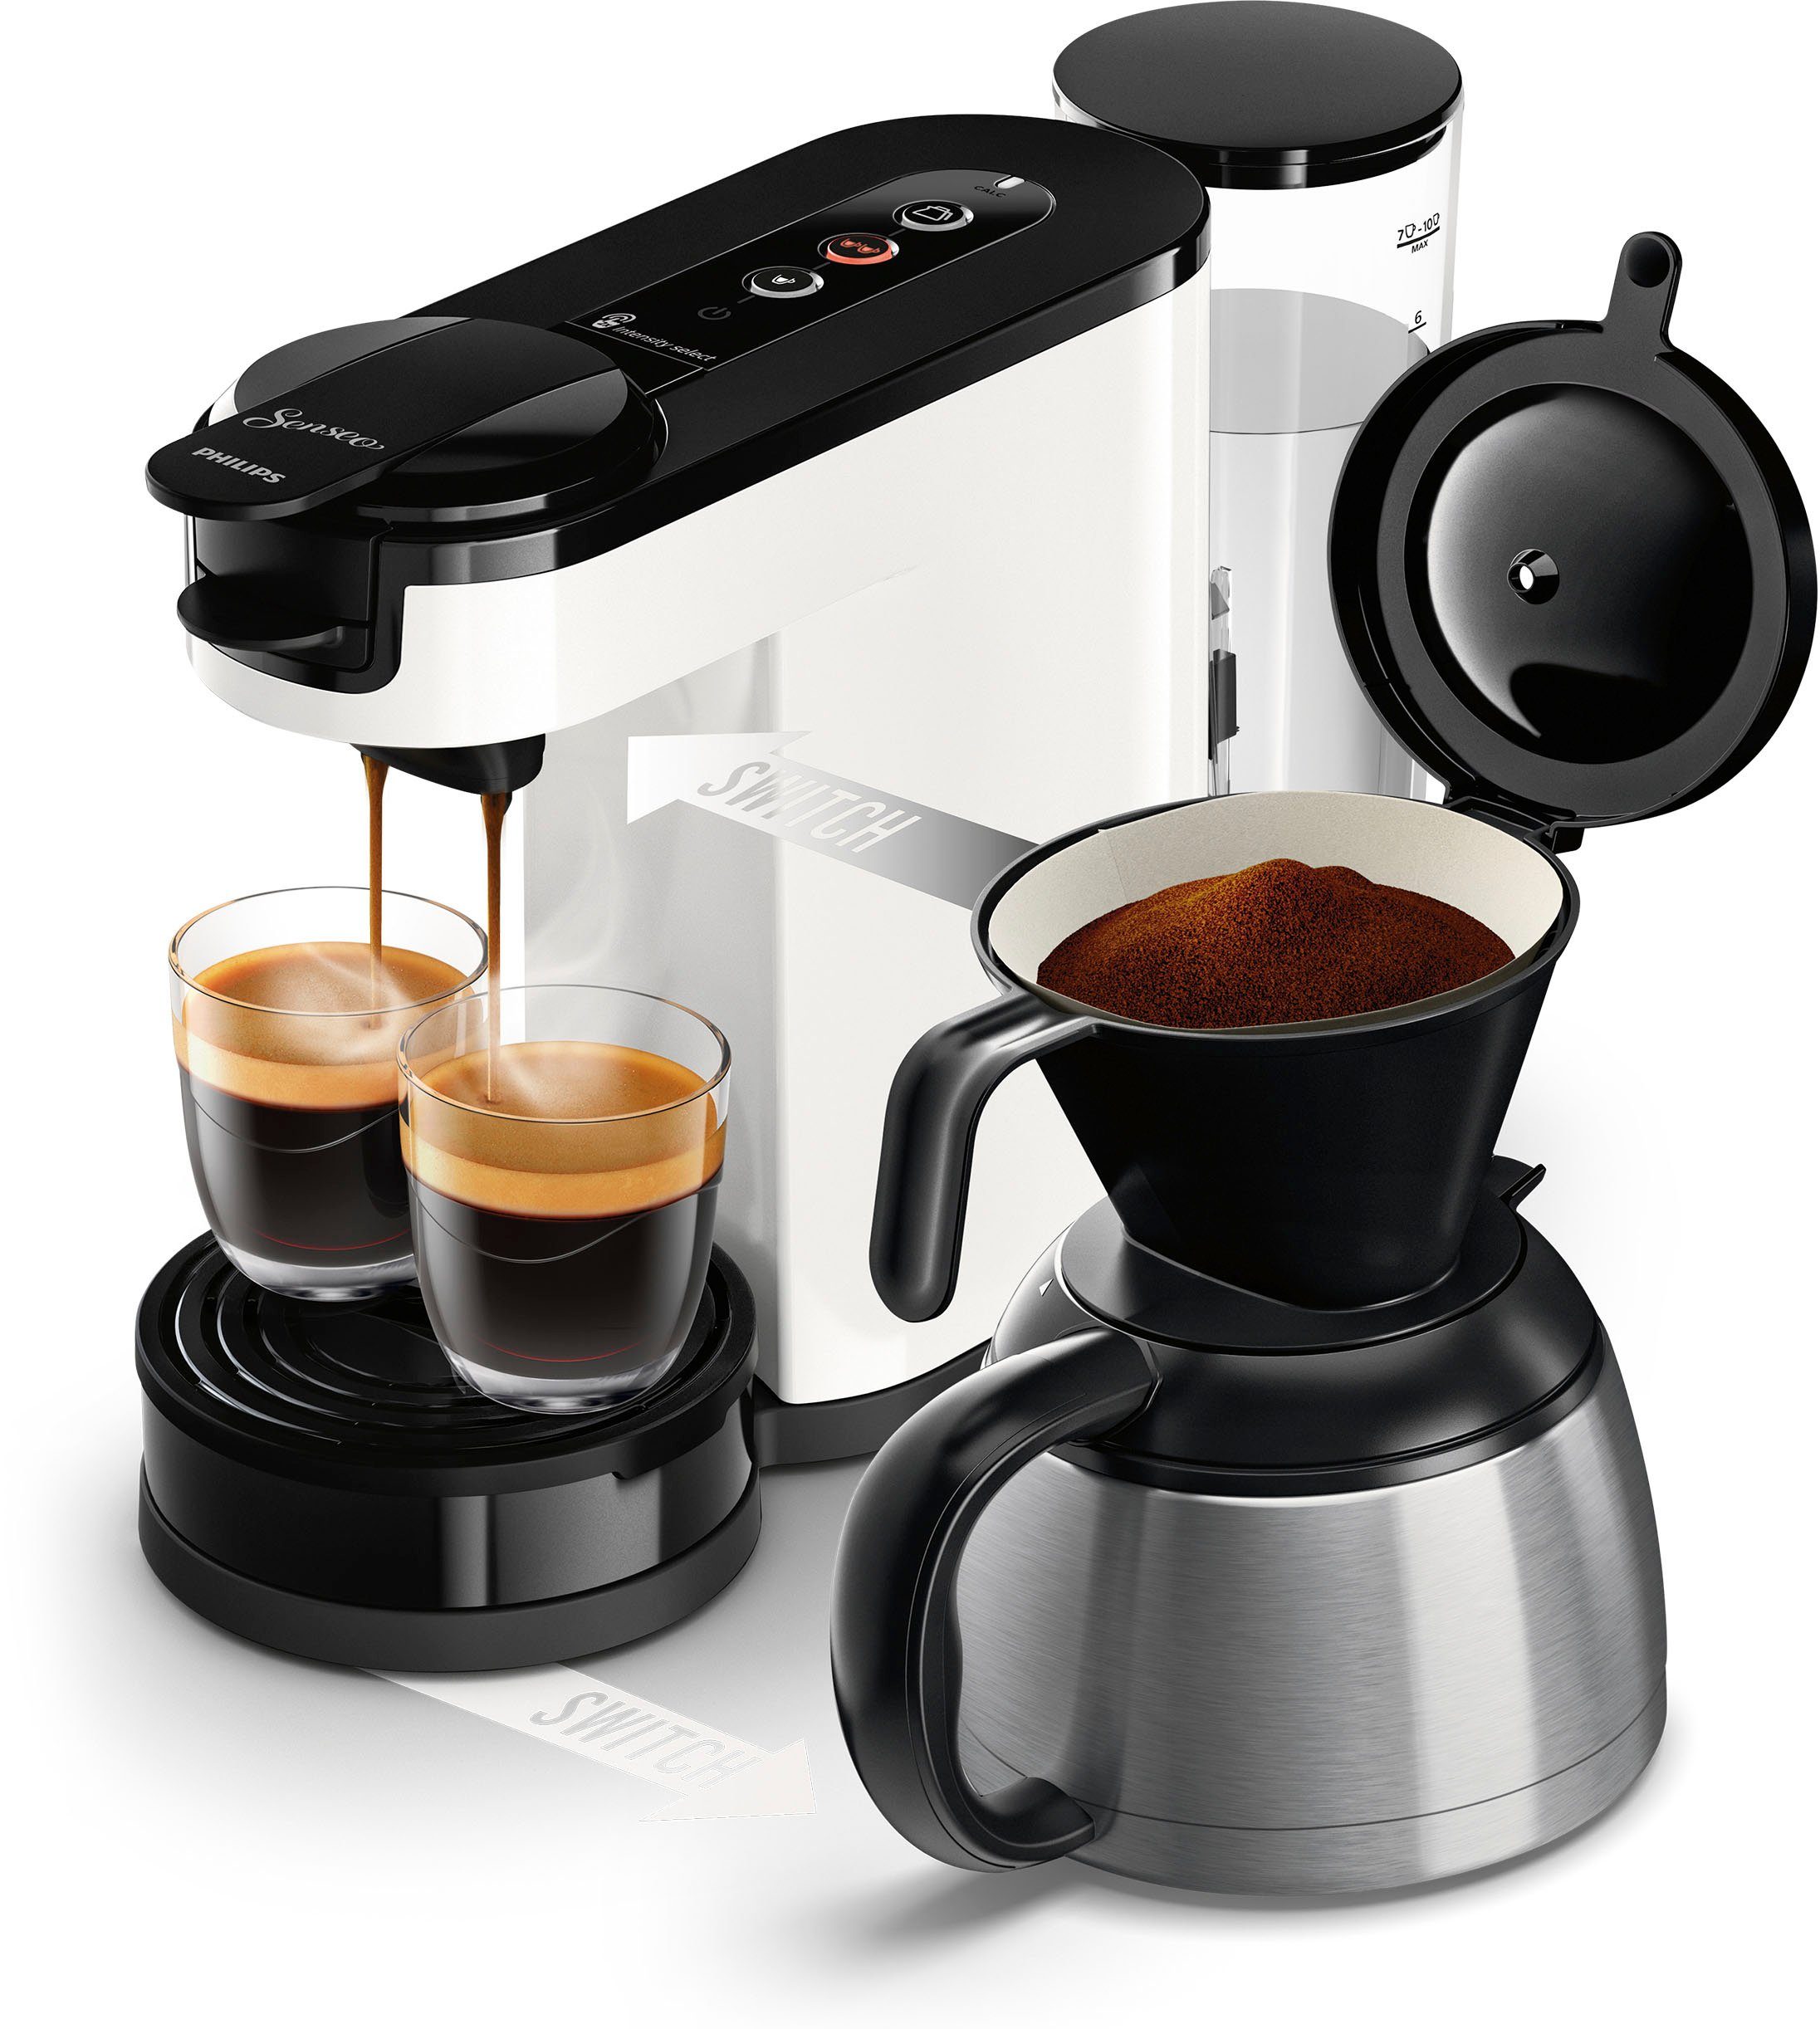 Philips Senseo Kaffeepadmaschine Kaffeekanne, UVP € Switch Wert inkl. Kaffeepaddose 1l im von 9,90 HD6592/04